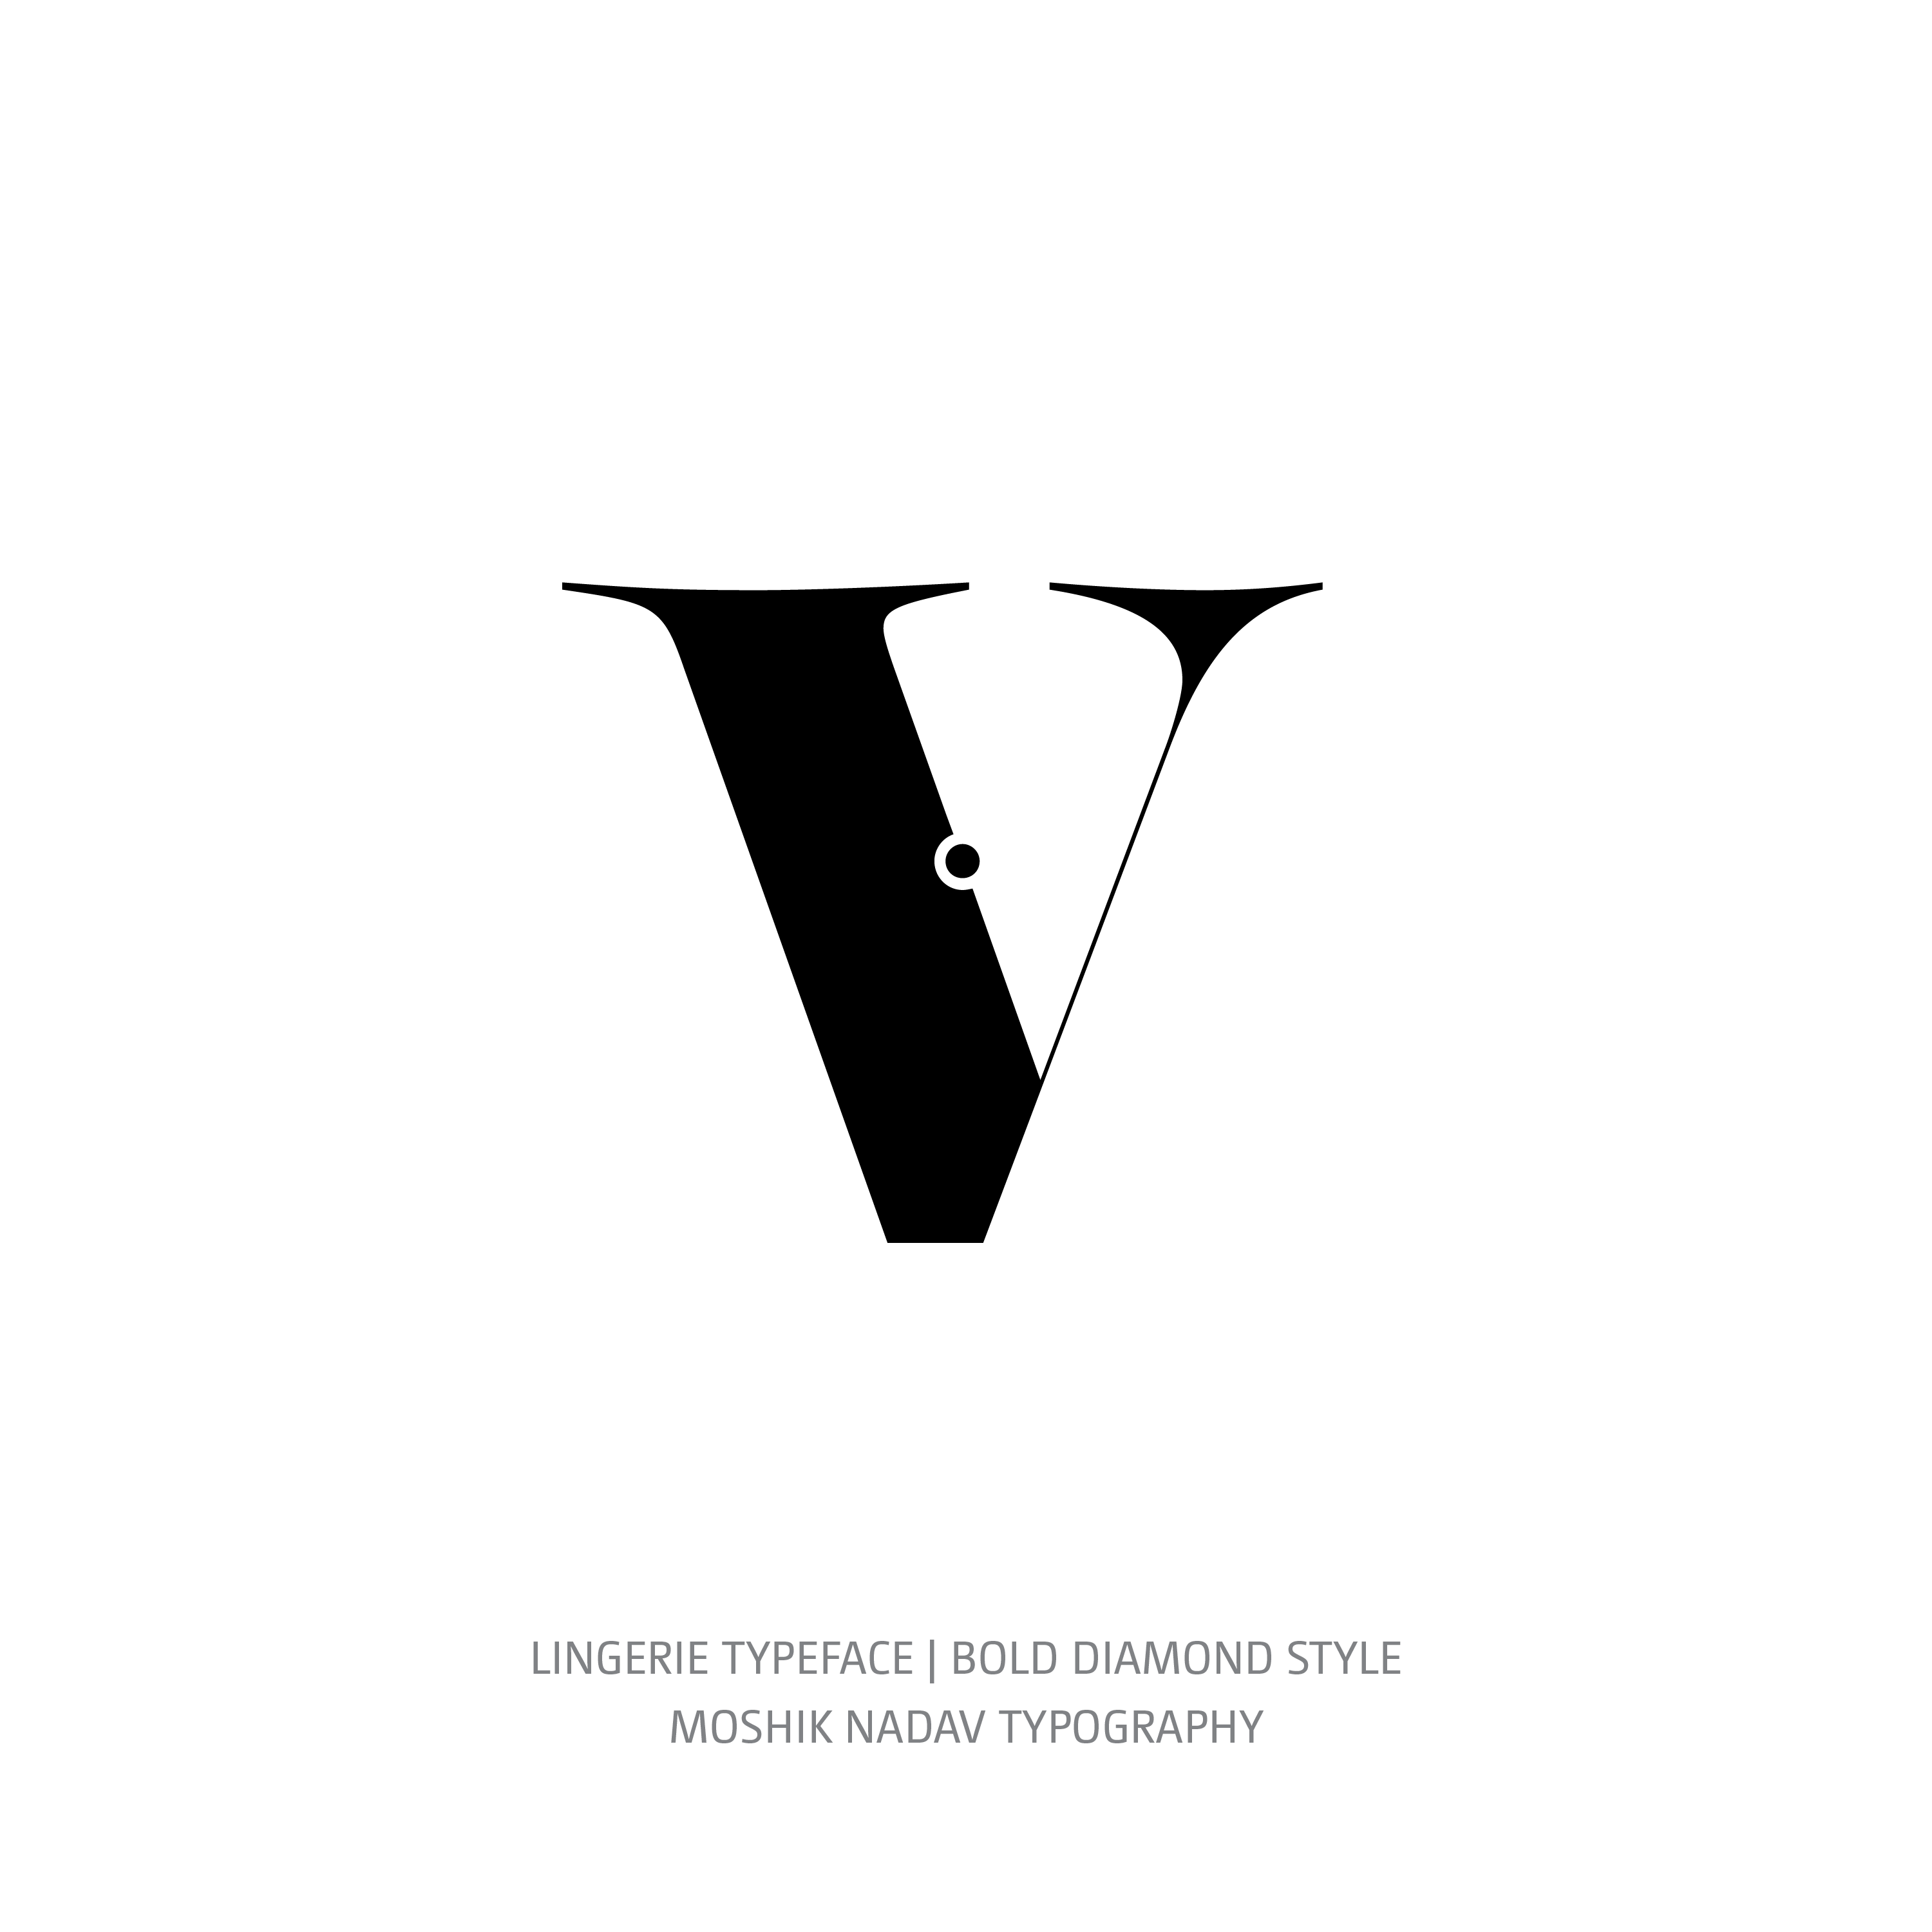 Lingerie Typeface Bold Diamond v